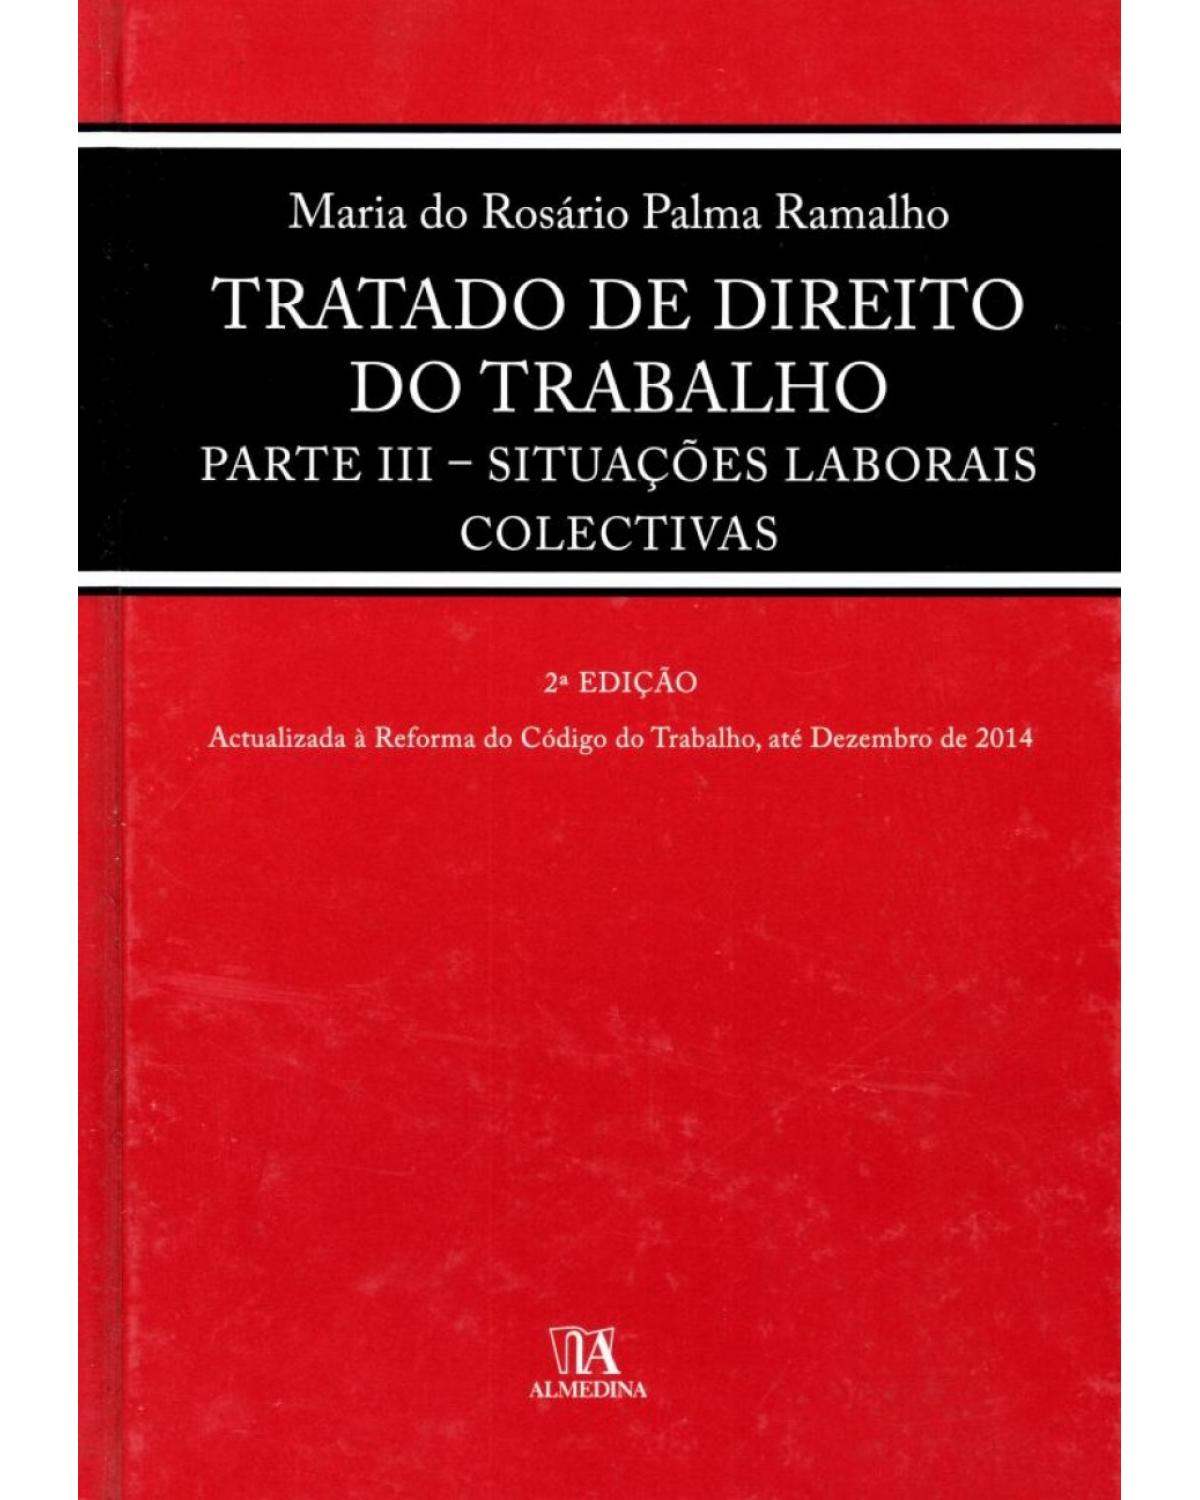 Tratado de direito do trabalho - parte III - Situações laboriais colectivas - 2ª Edição | 2015